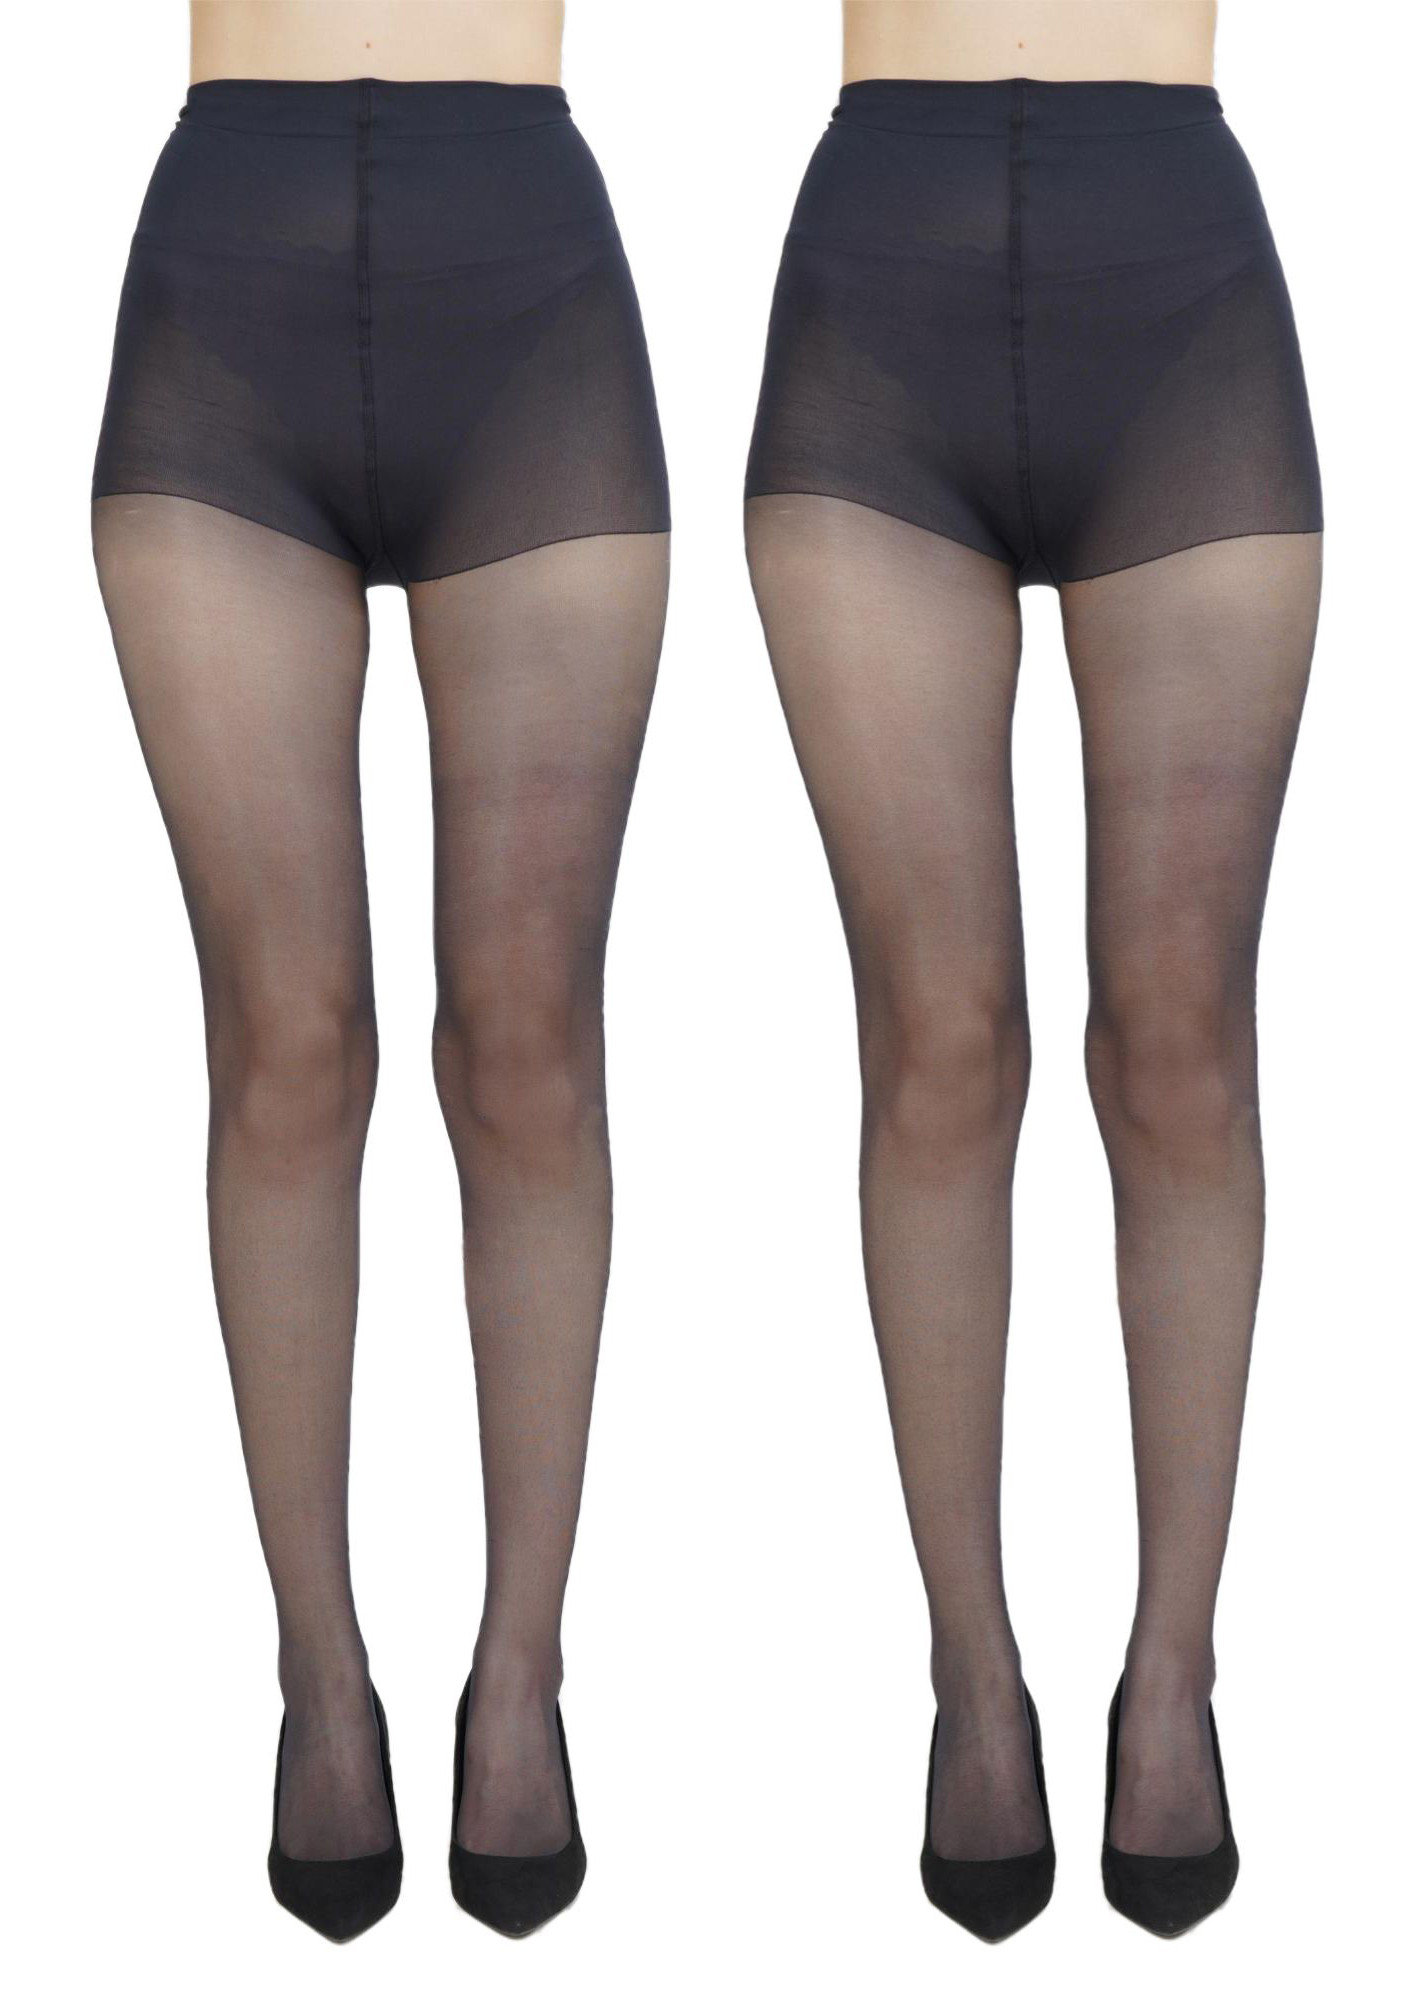 NEXT2SKIN Women Sheer Transparent Low Denier Pantyhose Stockings - Pack of 2 (Black)